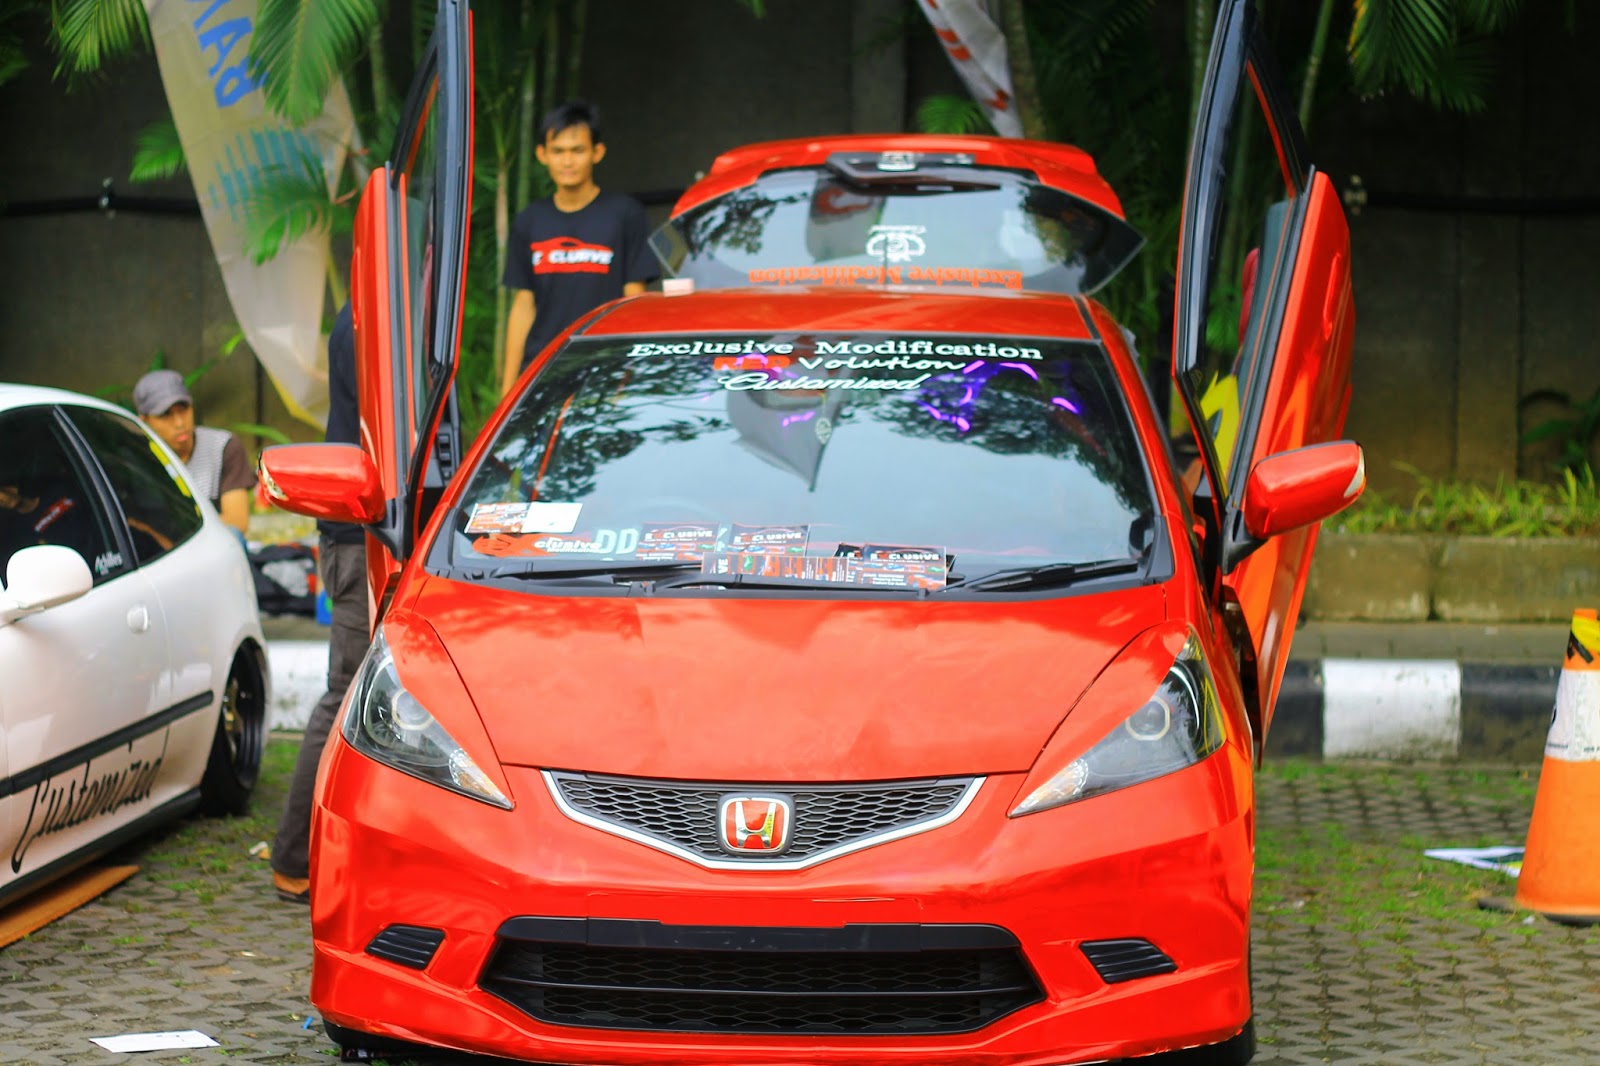 Sticker Chrome Pertama Di Makassar Exclusive Modification Car